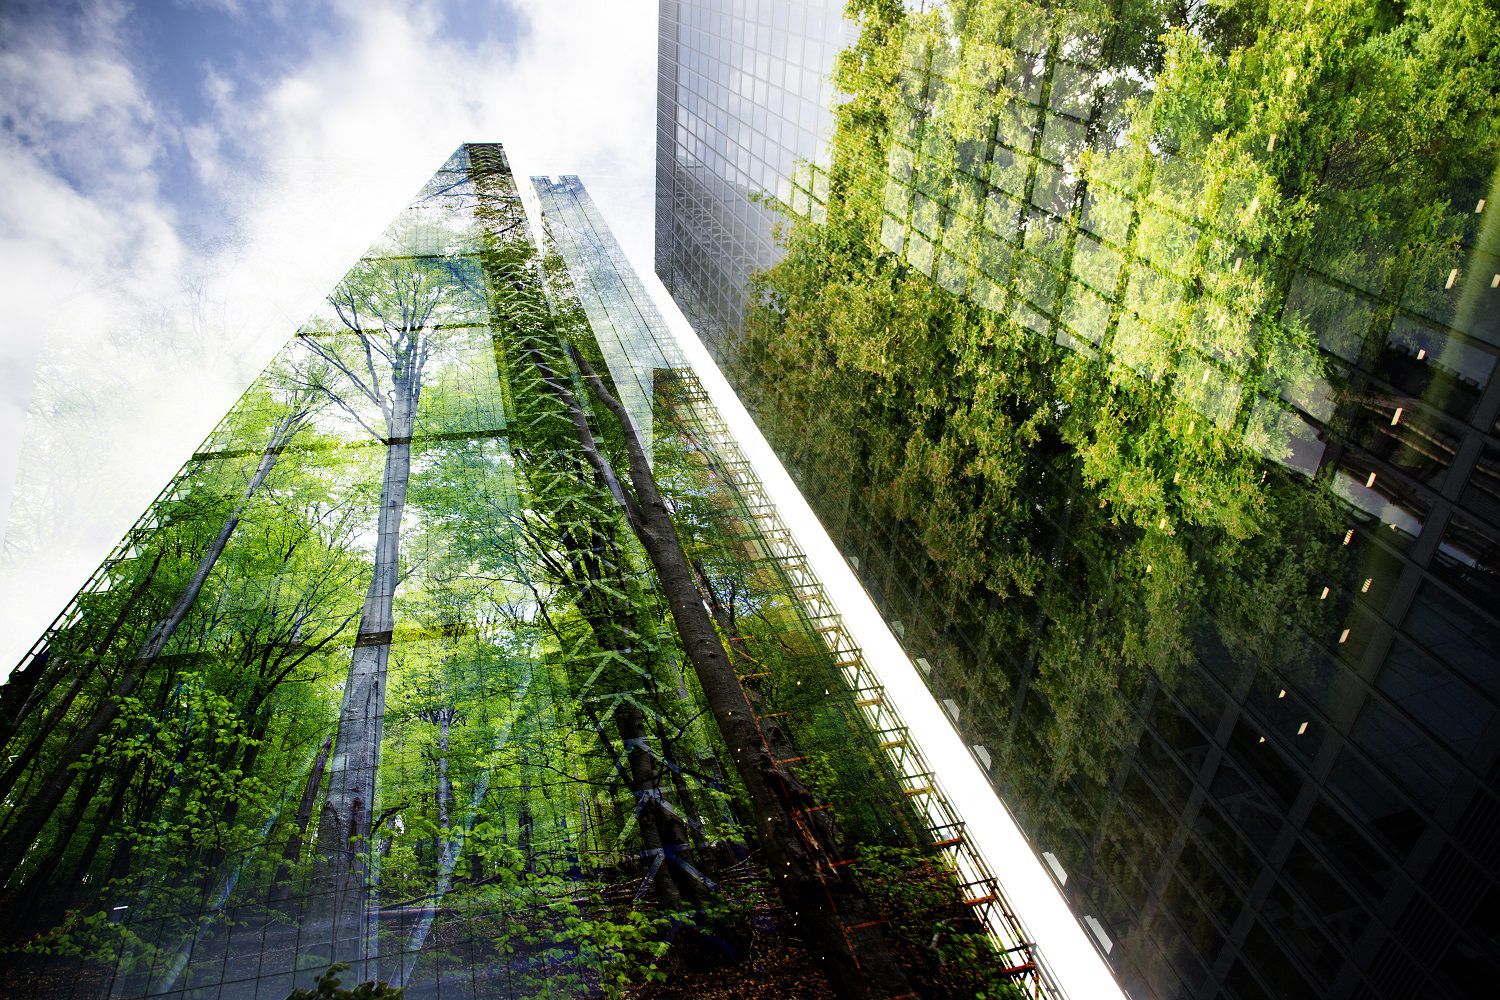 Réflection d'arbres sur un building